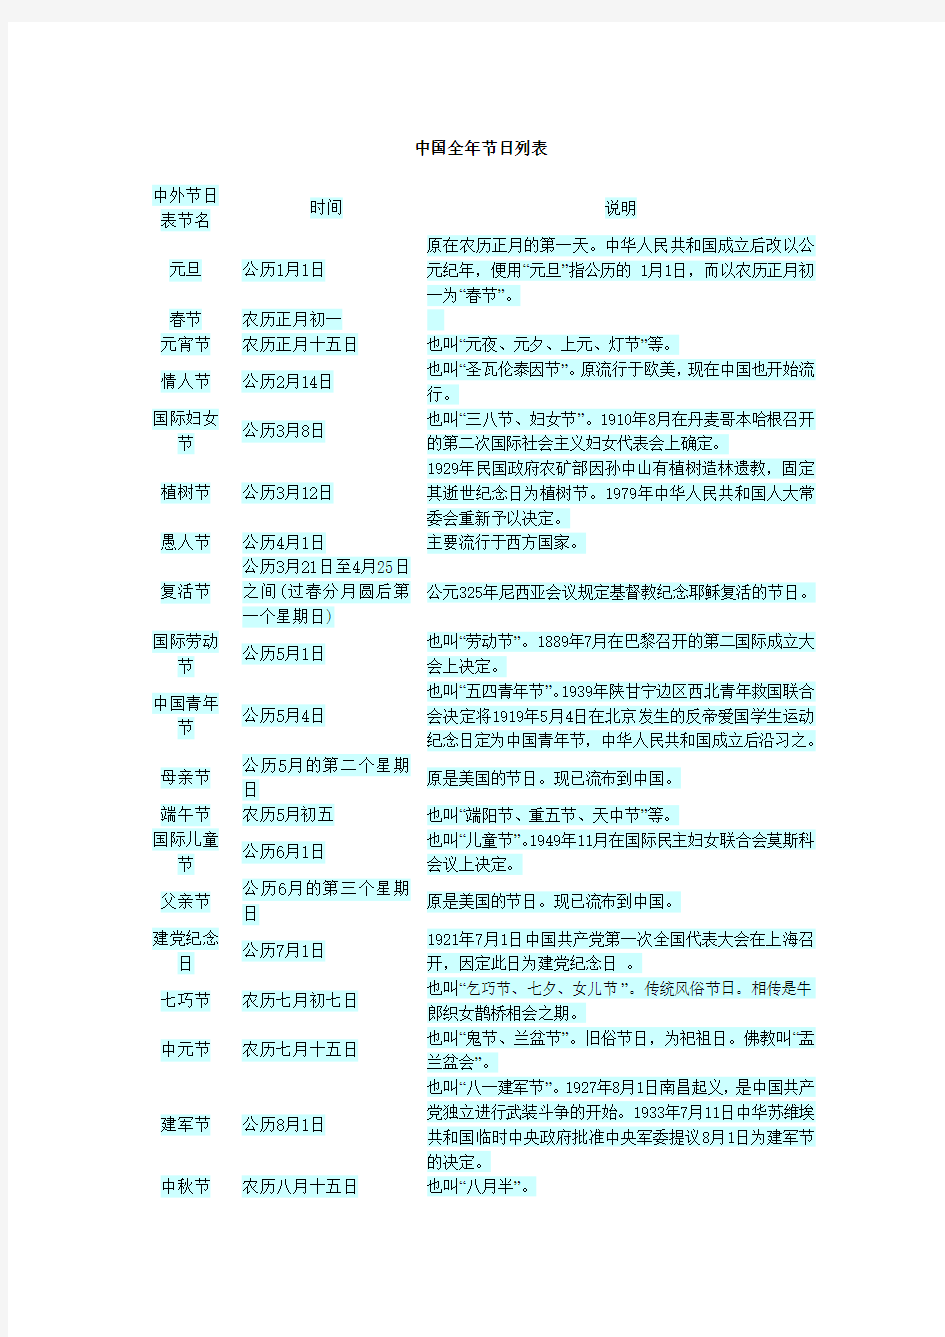 中国全年节日列表